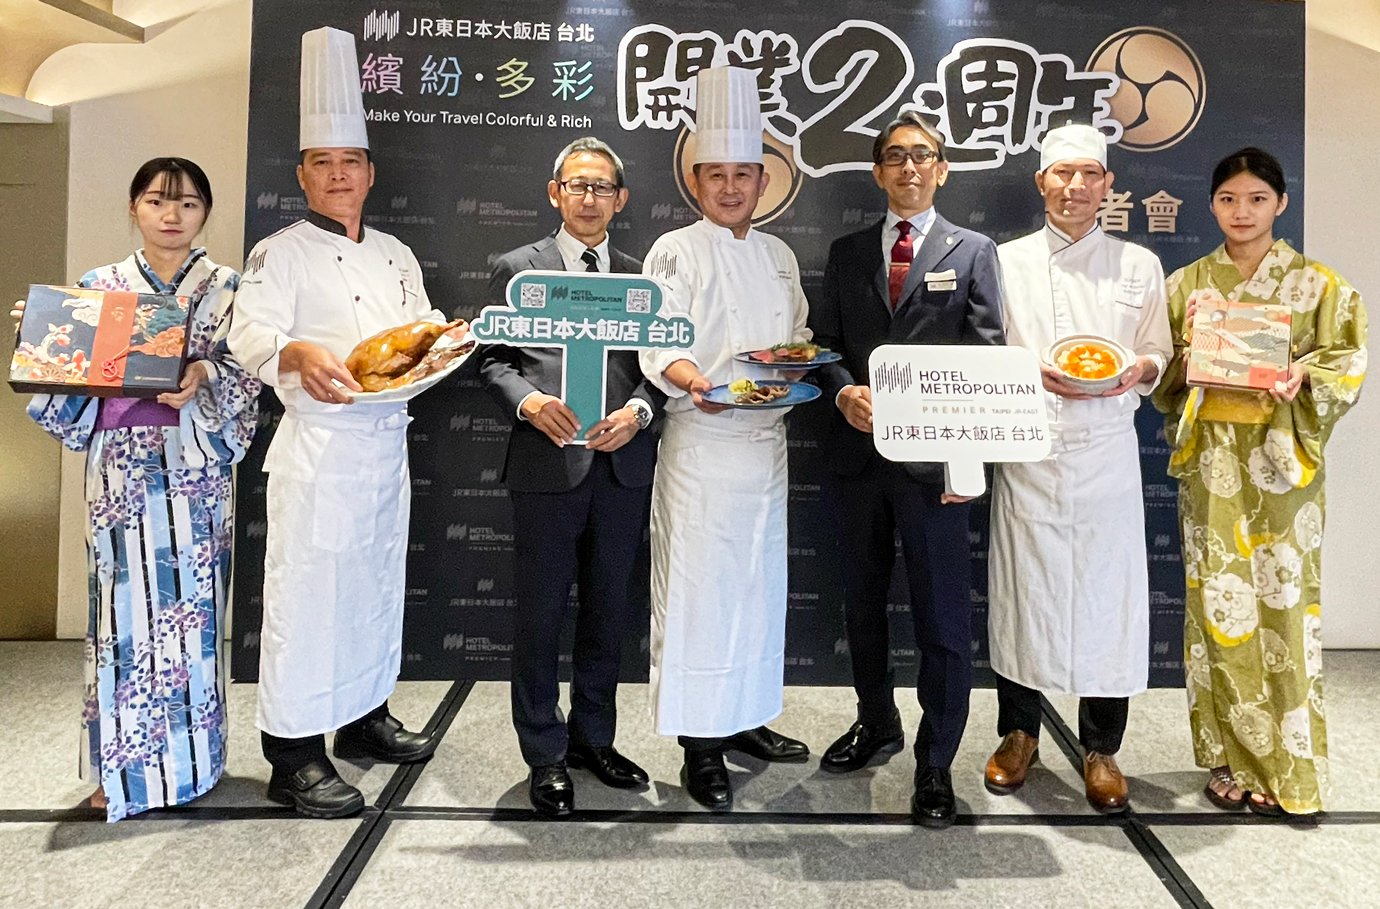 JR東日本大飯店開幕二周年